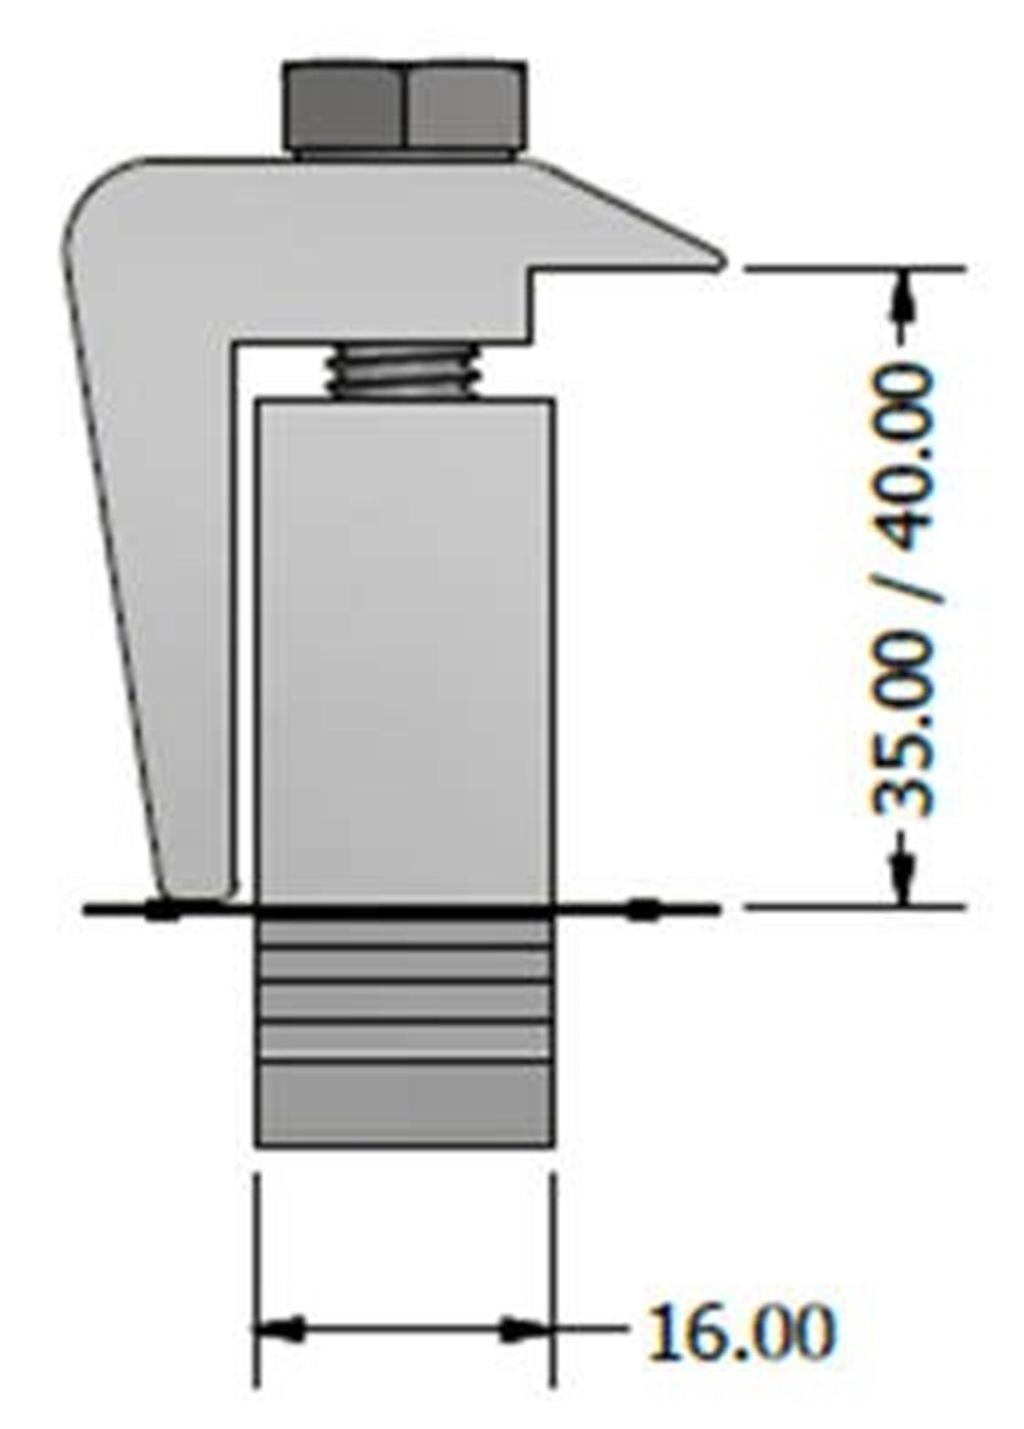 Grampo Terminal Aplicação: Grampo terminal de fixação para módulos com espessura de 35 ou 40 mm.